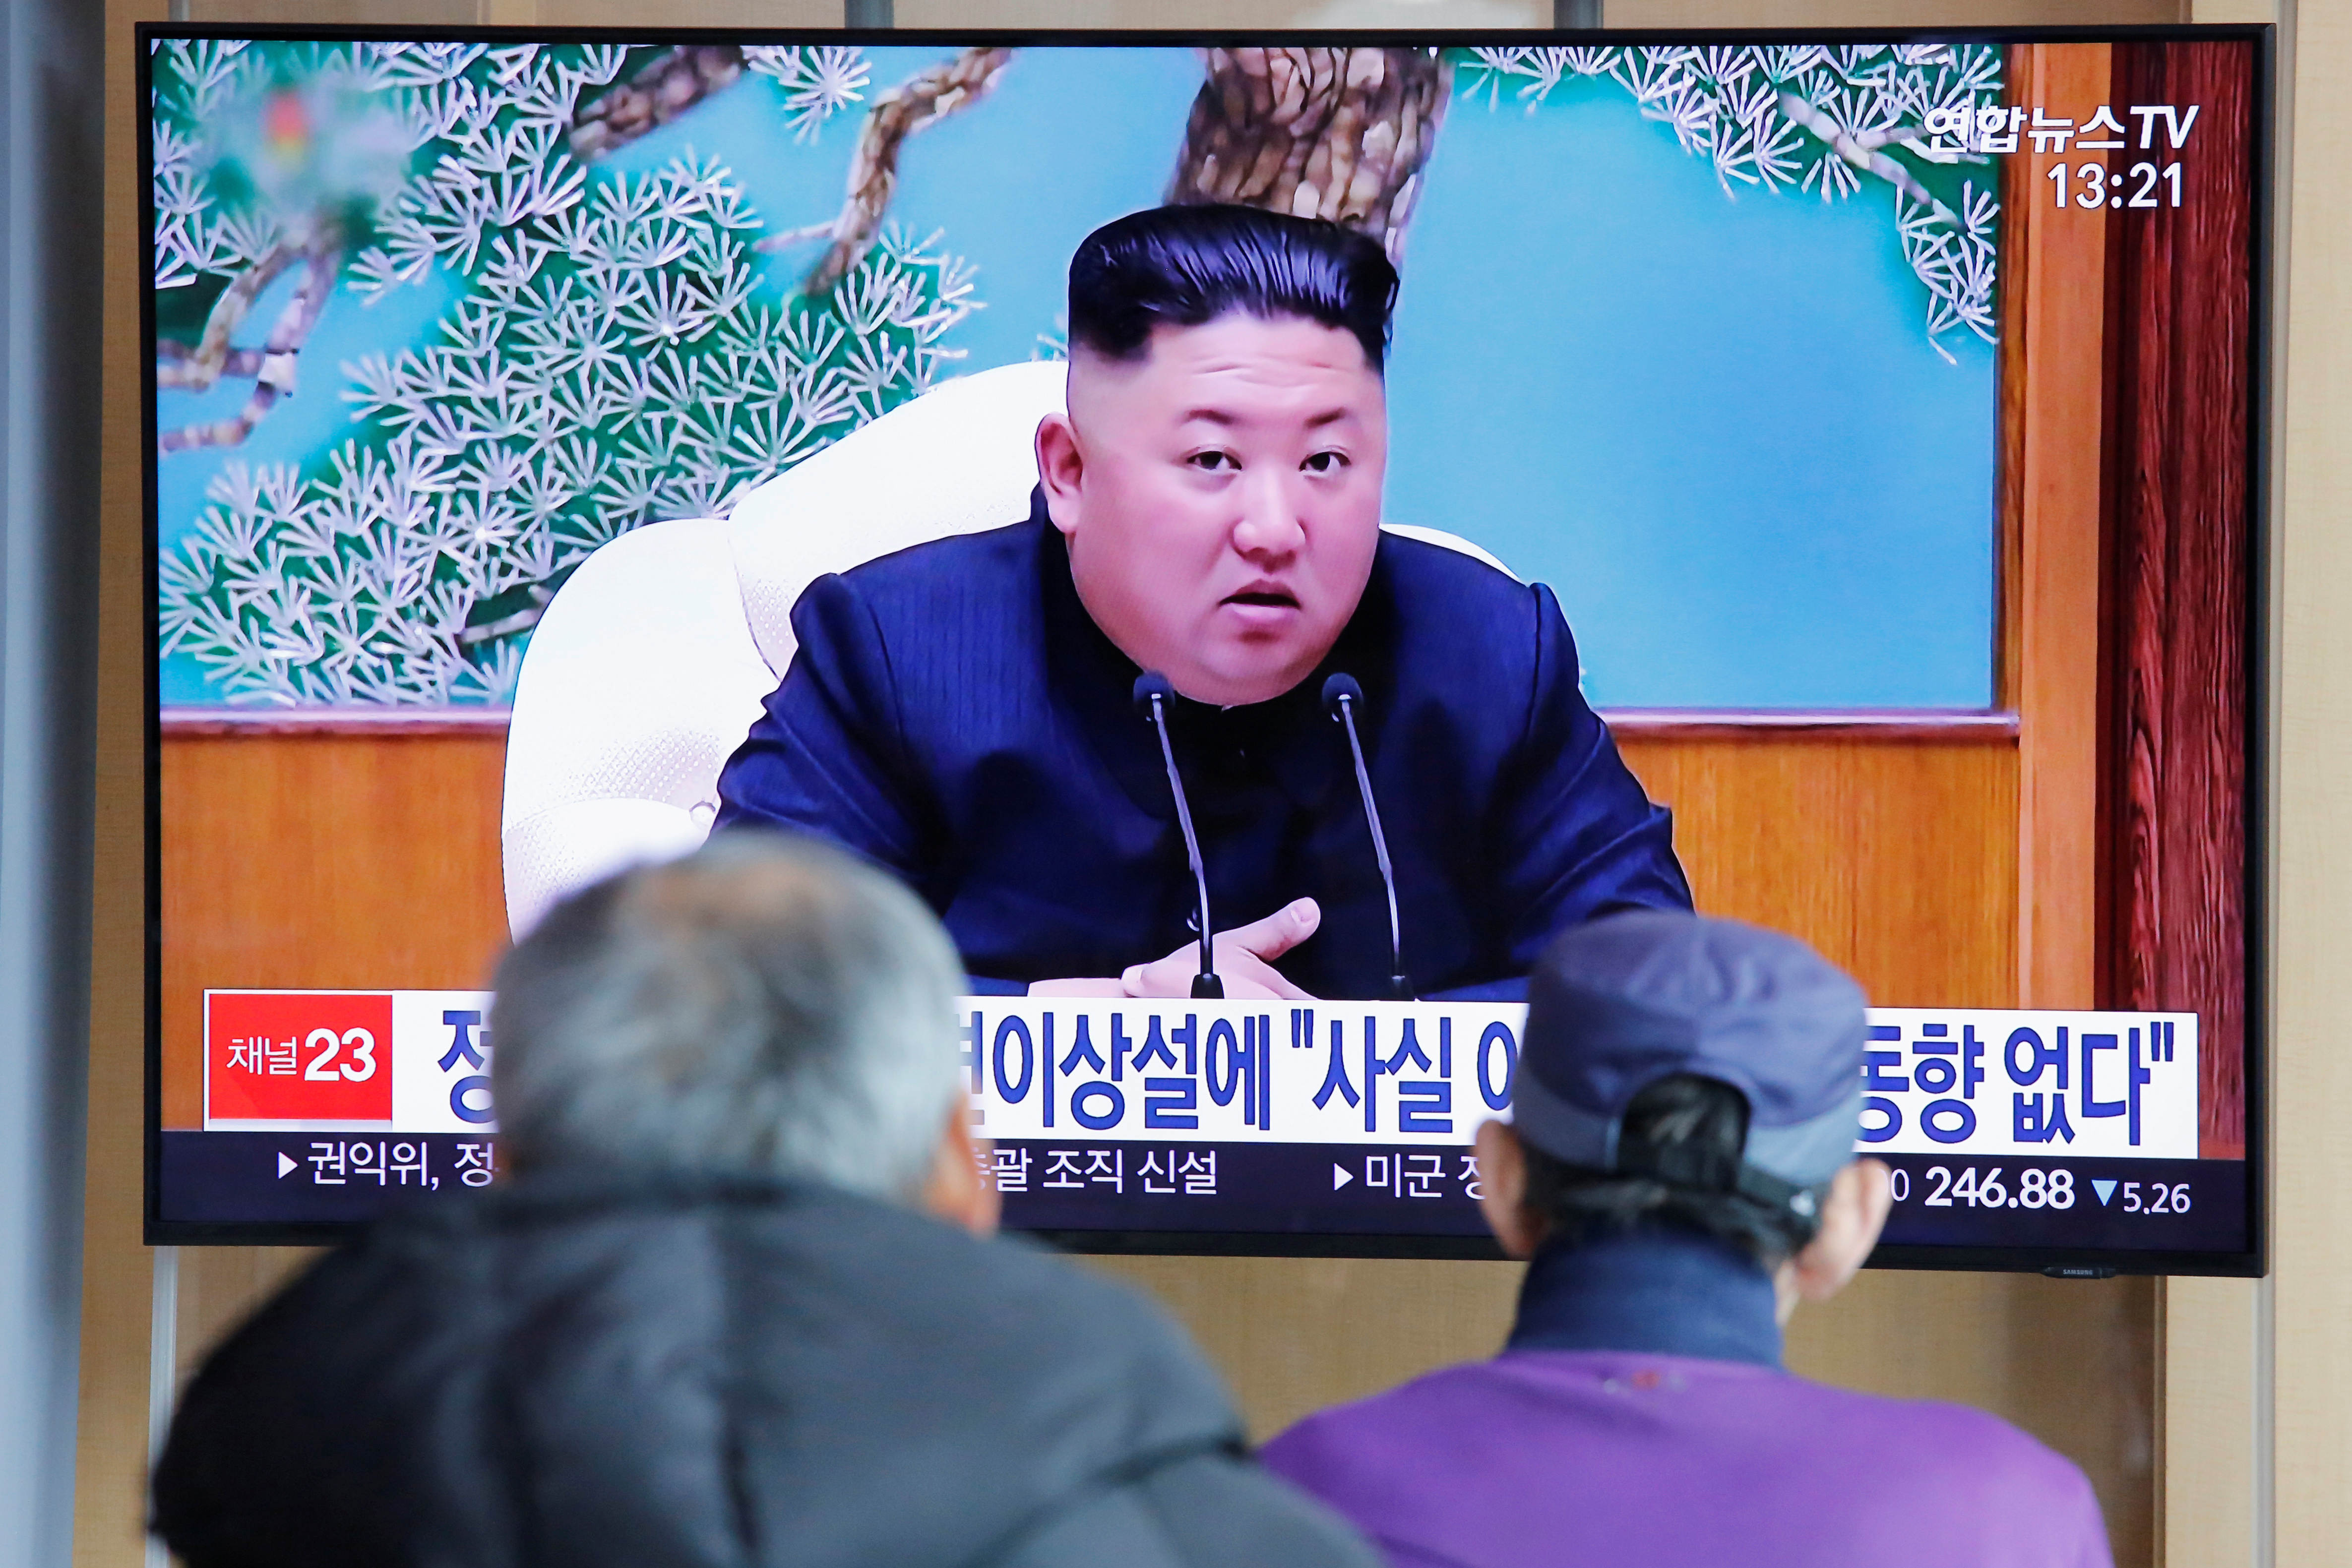 Gobierno surcoreano se pronuncia sobre supuesta operación cardíaca de Kim Jong-un